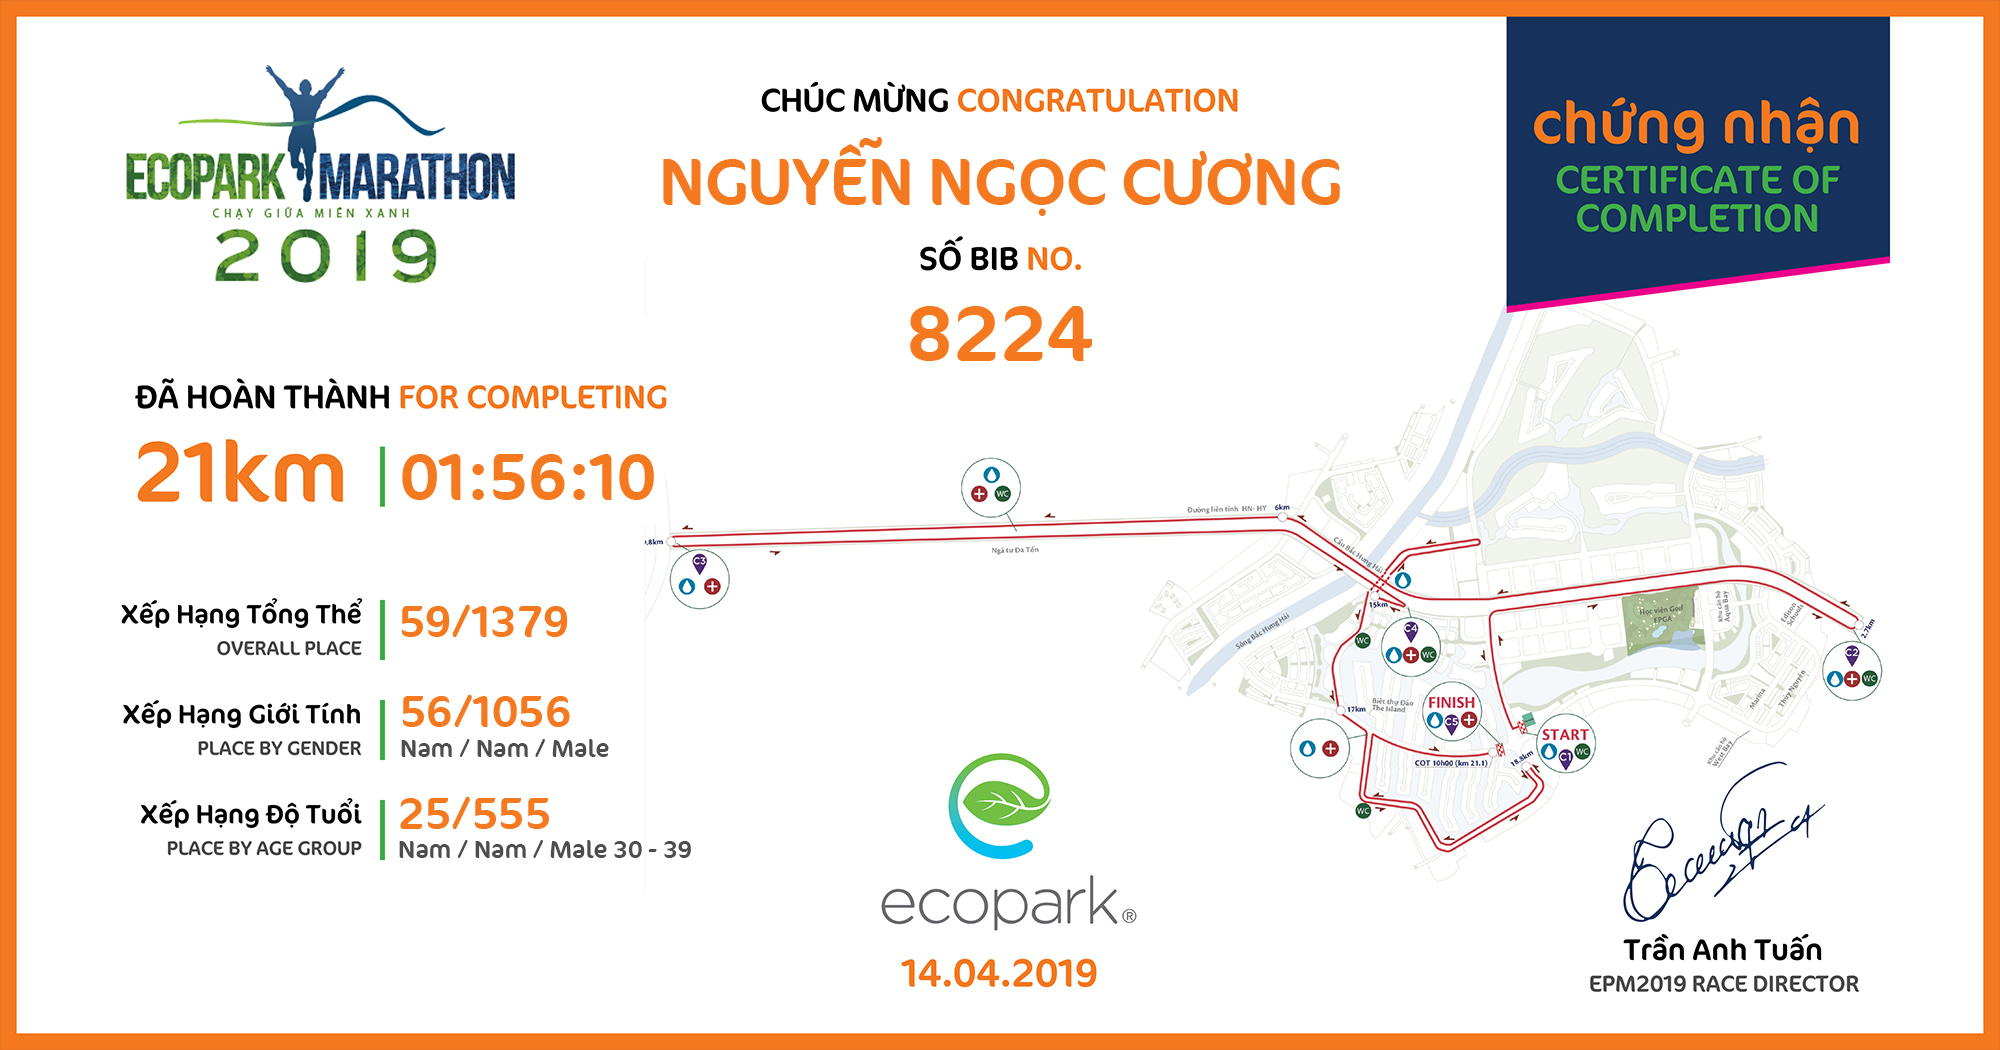 8224 - Nguyễn Ngọc Cương